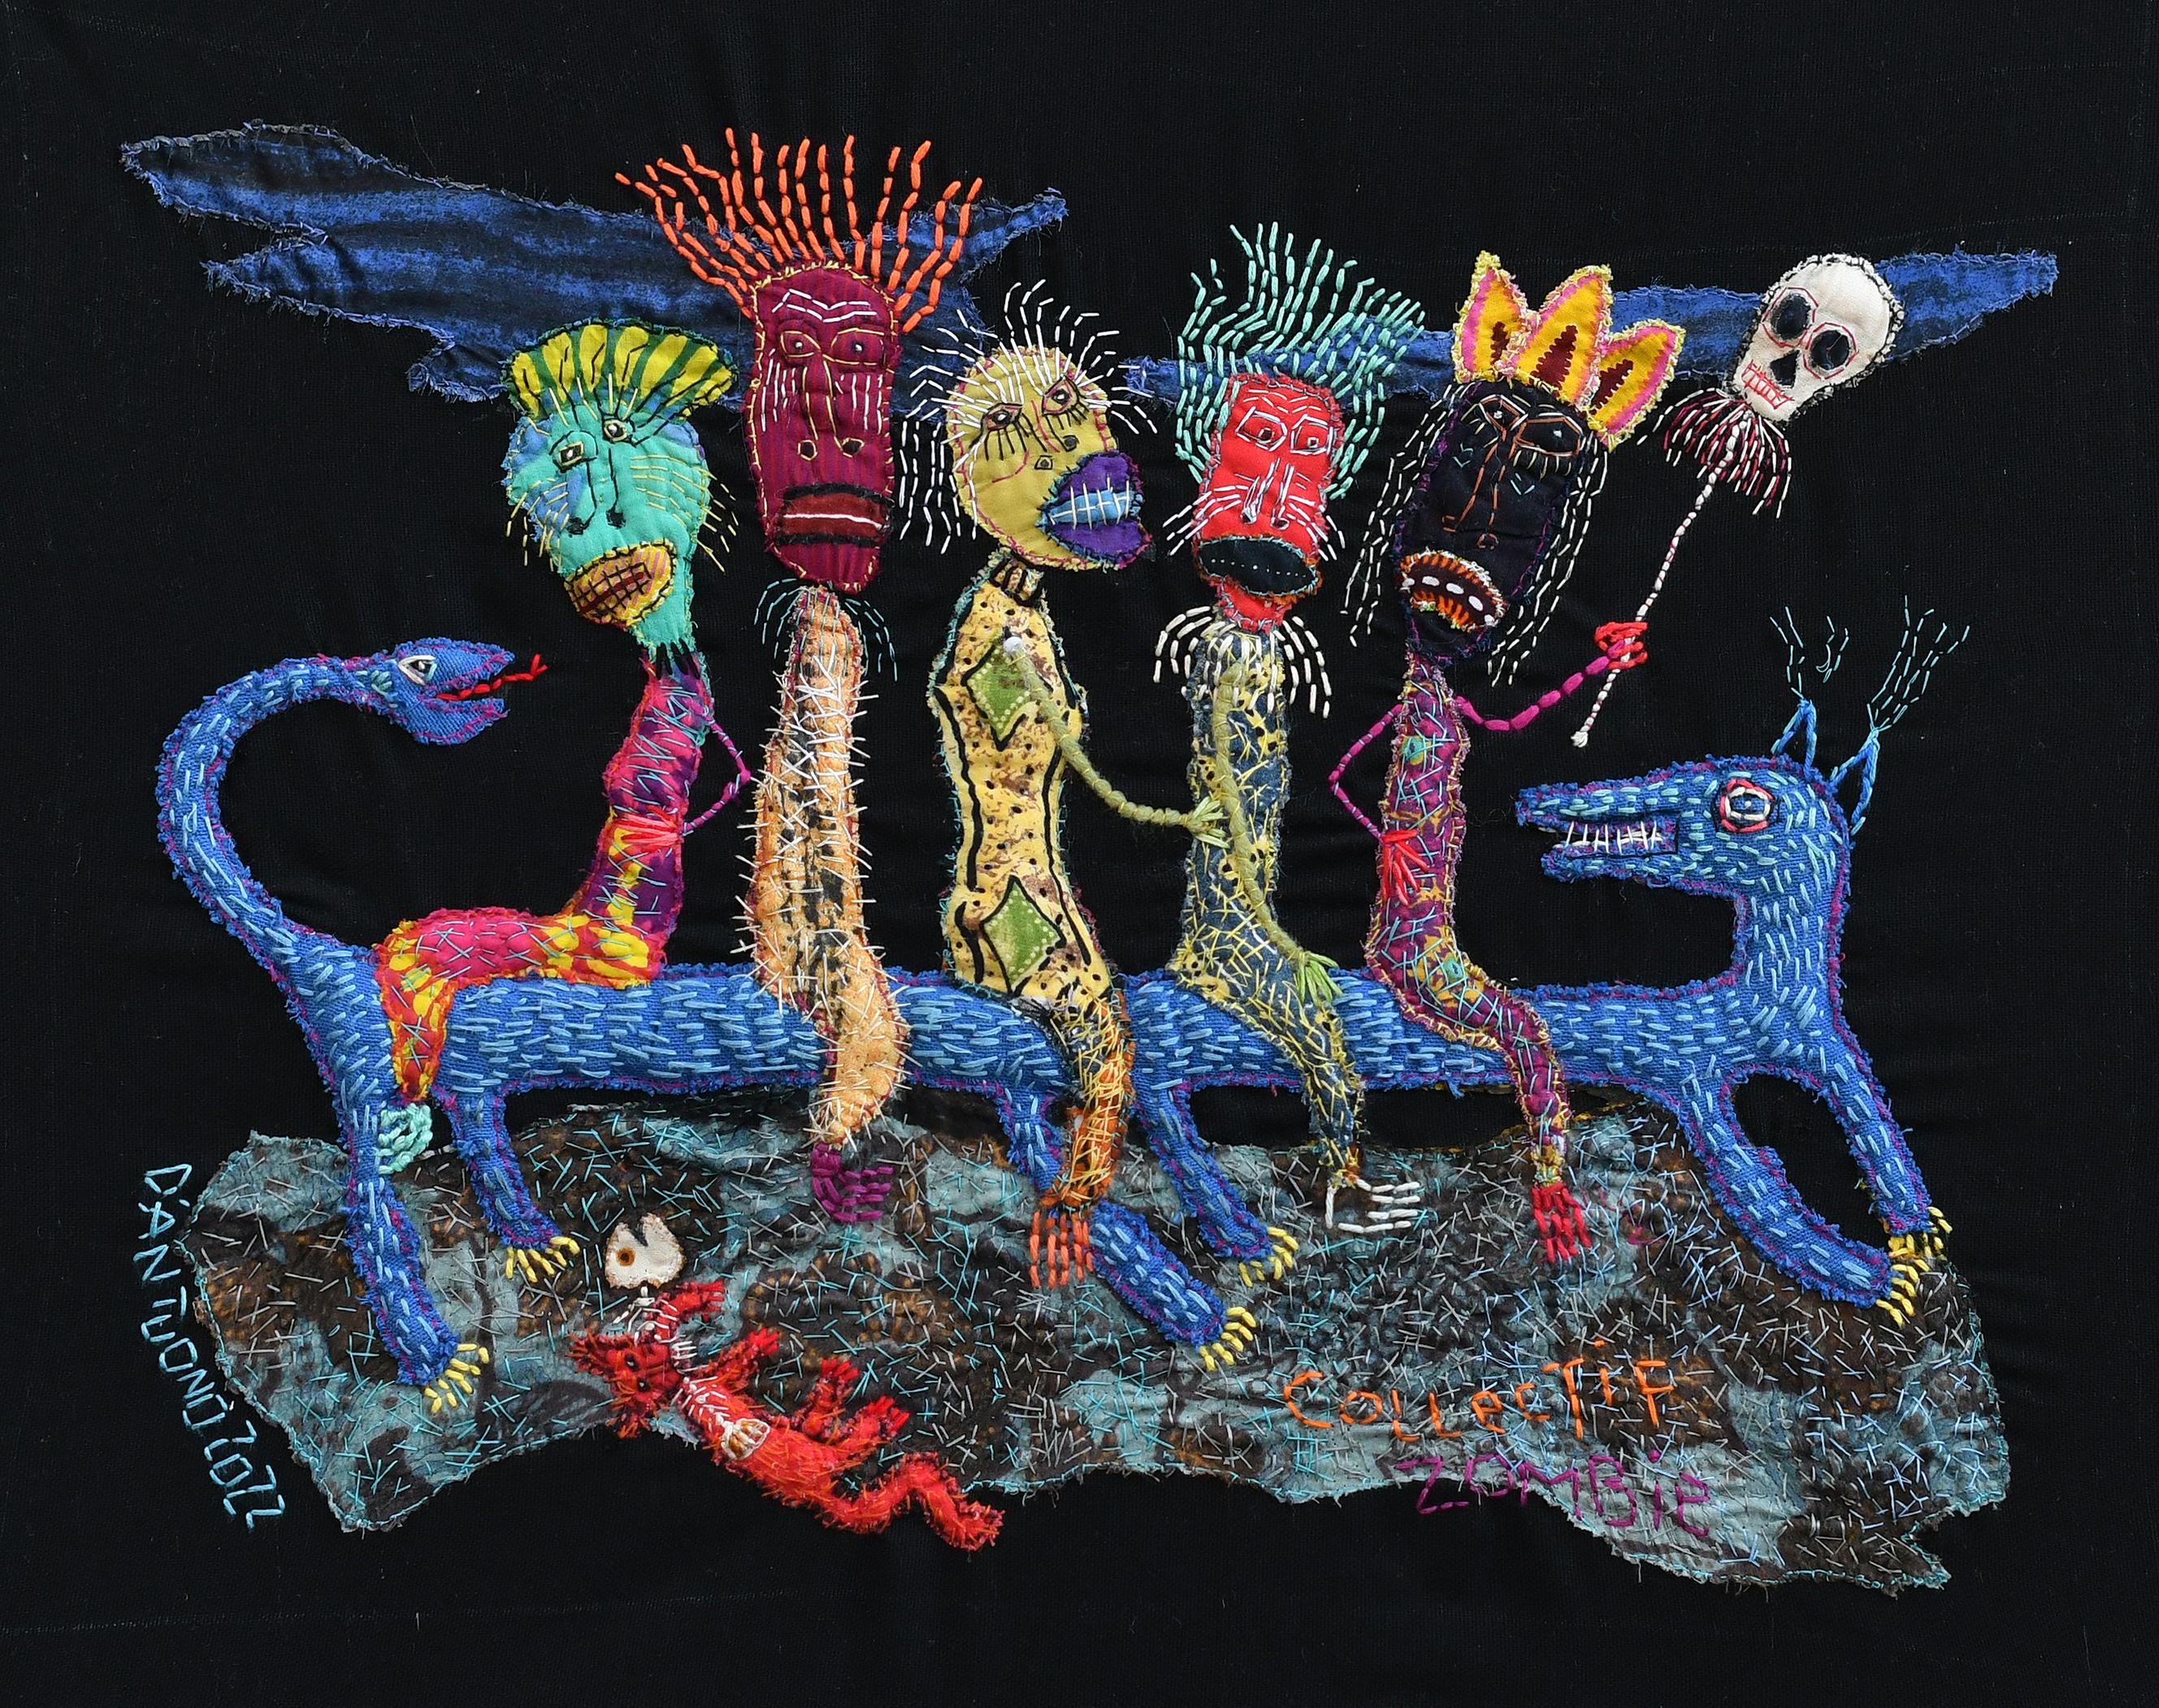 Groupe zombie Barbara d'Antuono 21st Century art textile art haiti outsider art